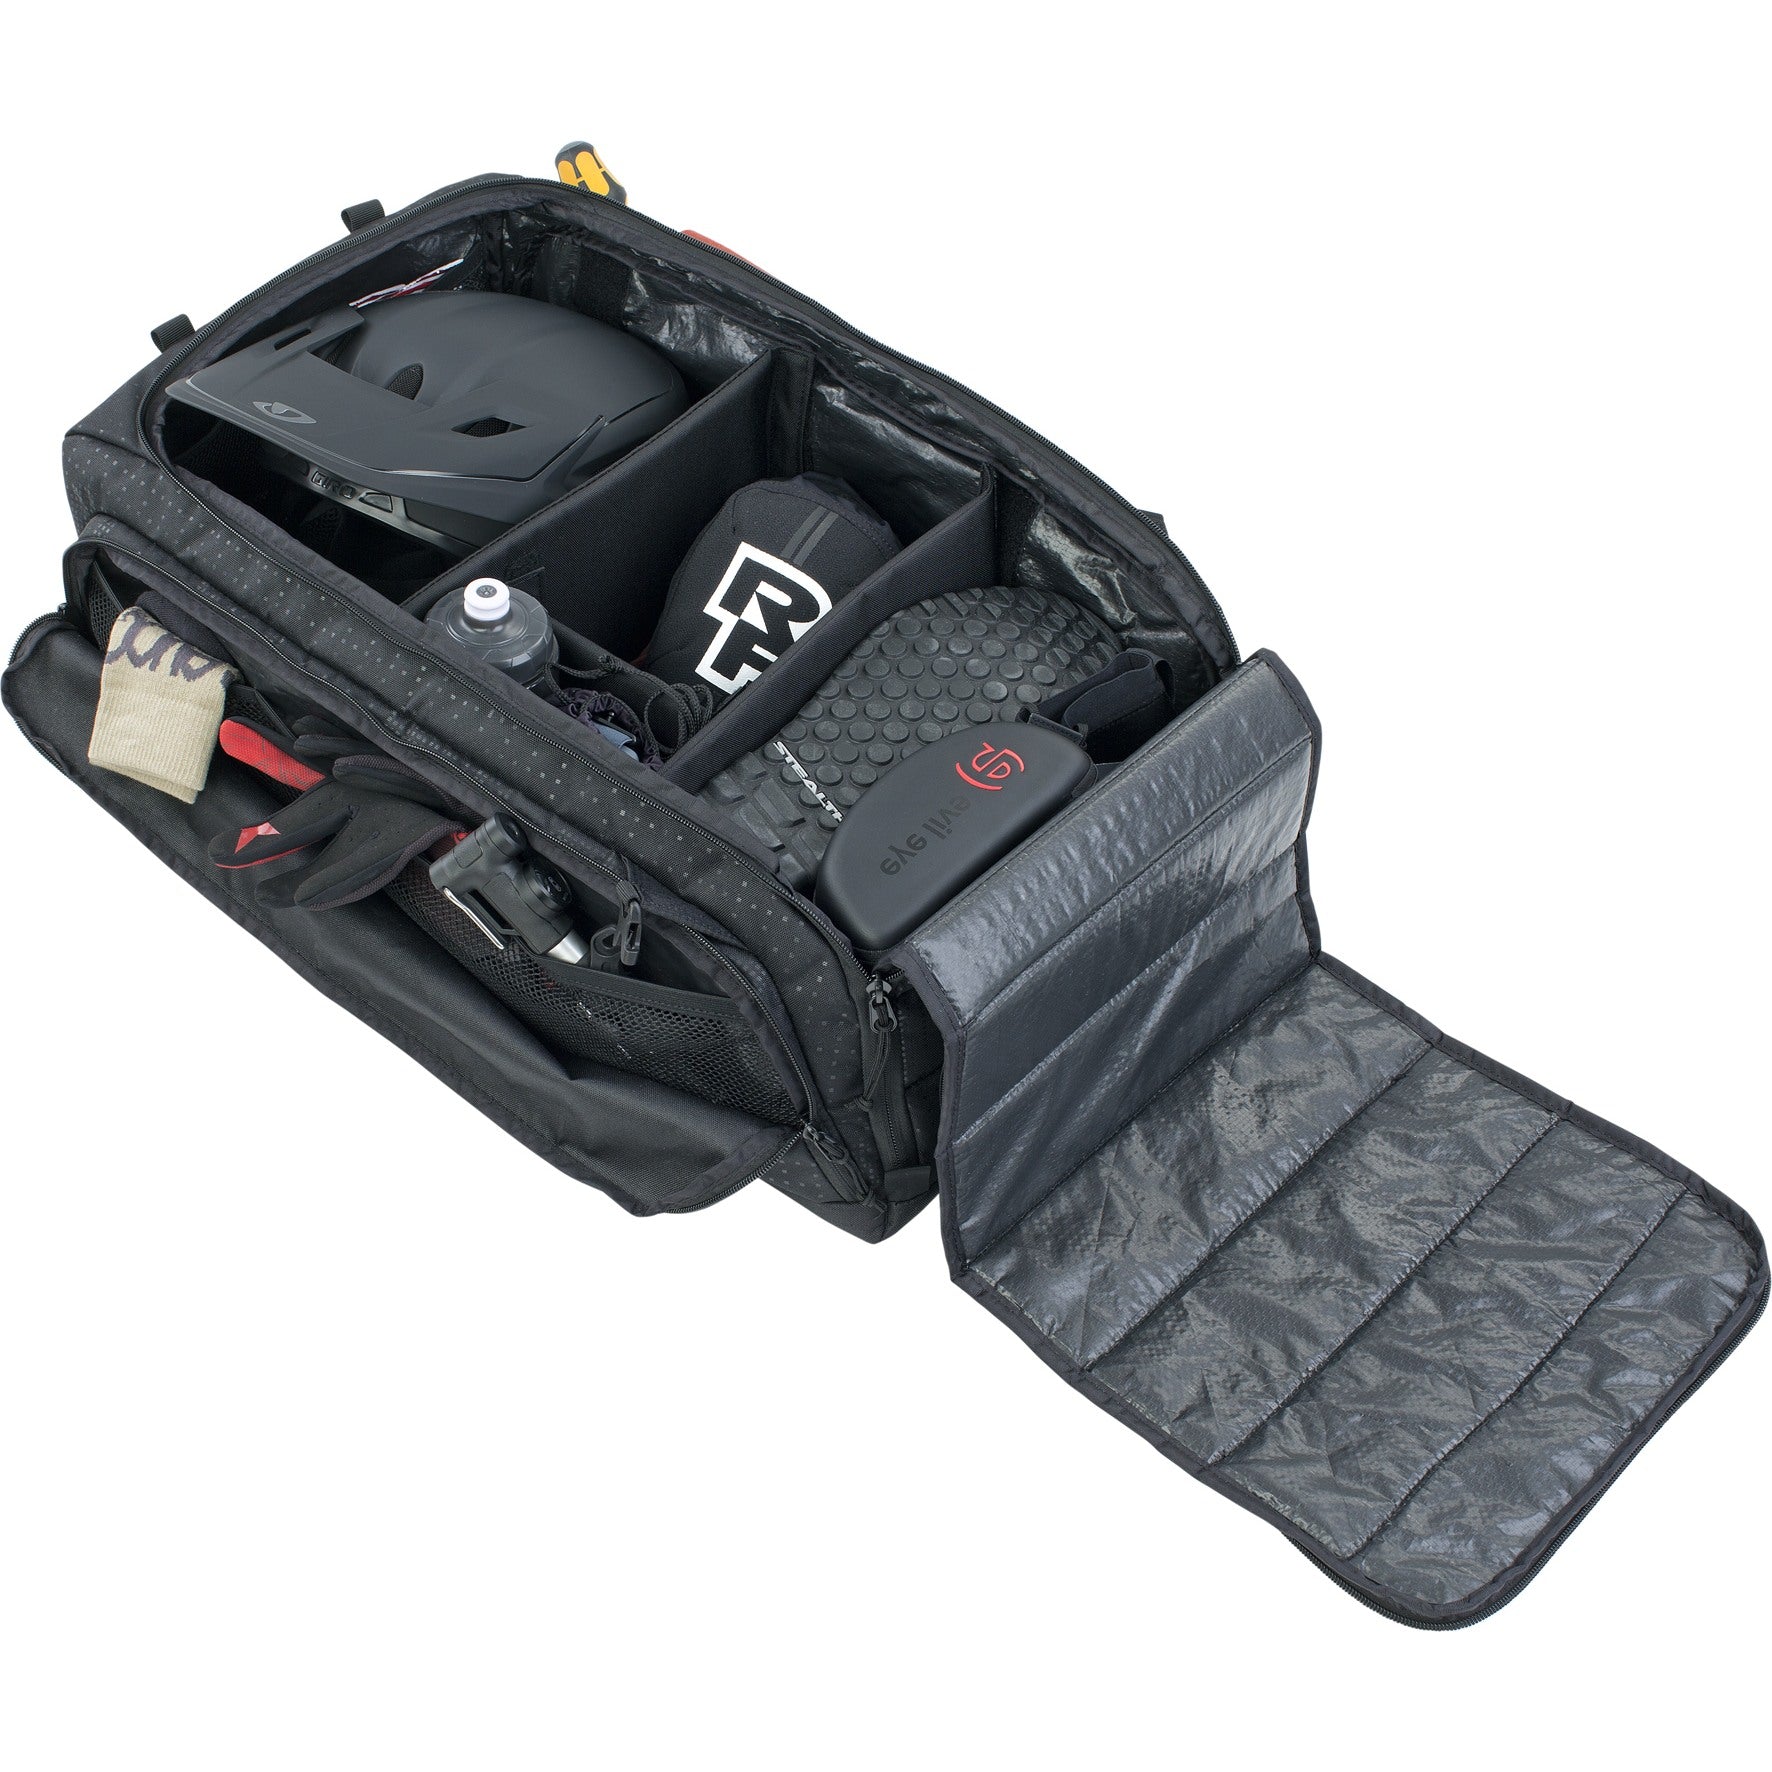 EVOC - Gear Bag 55